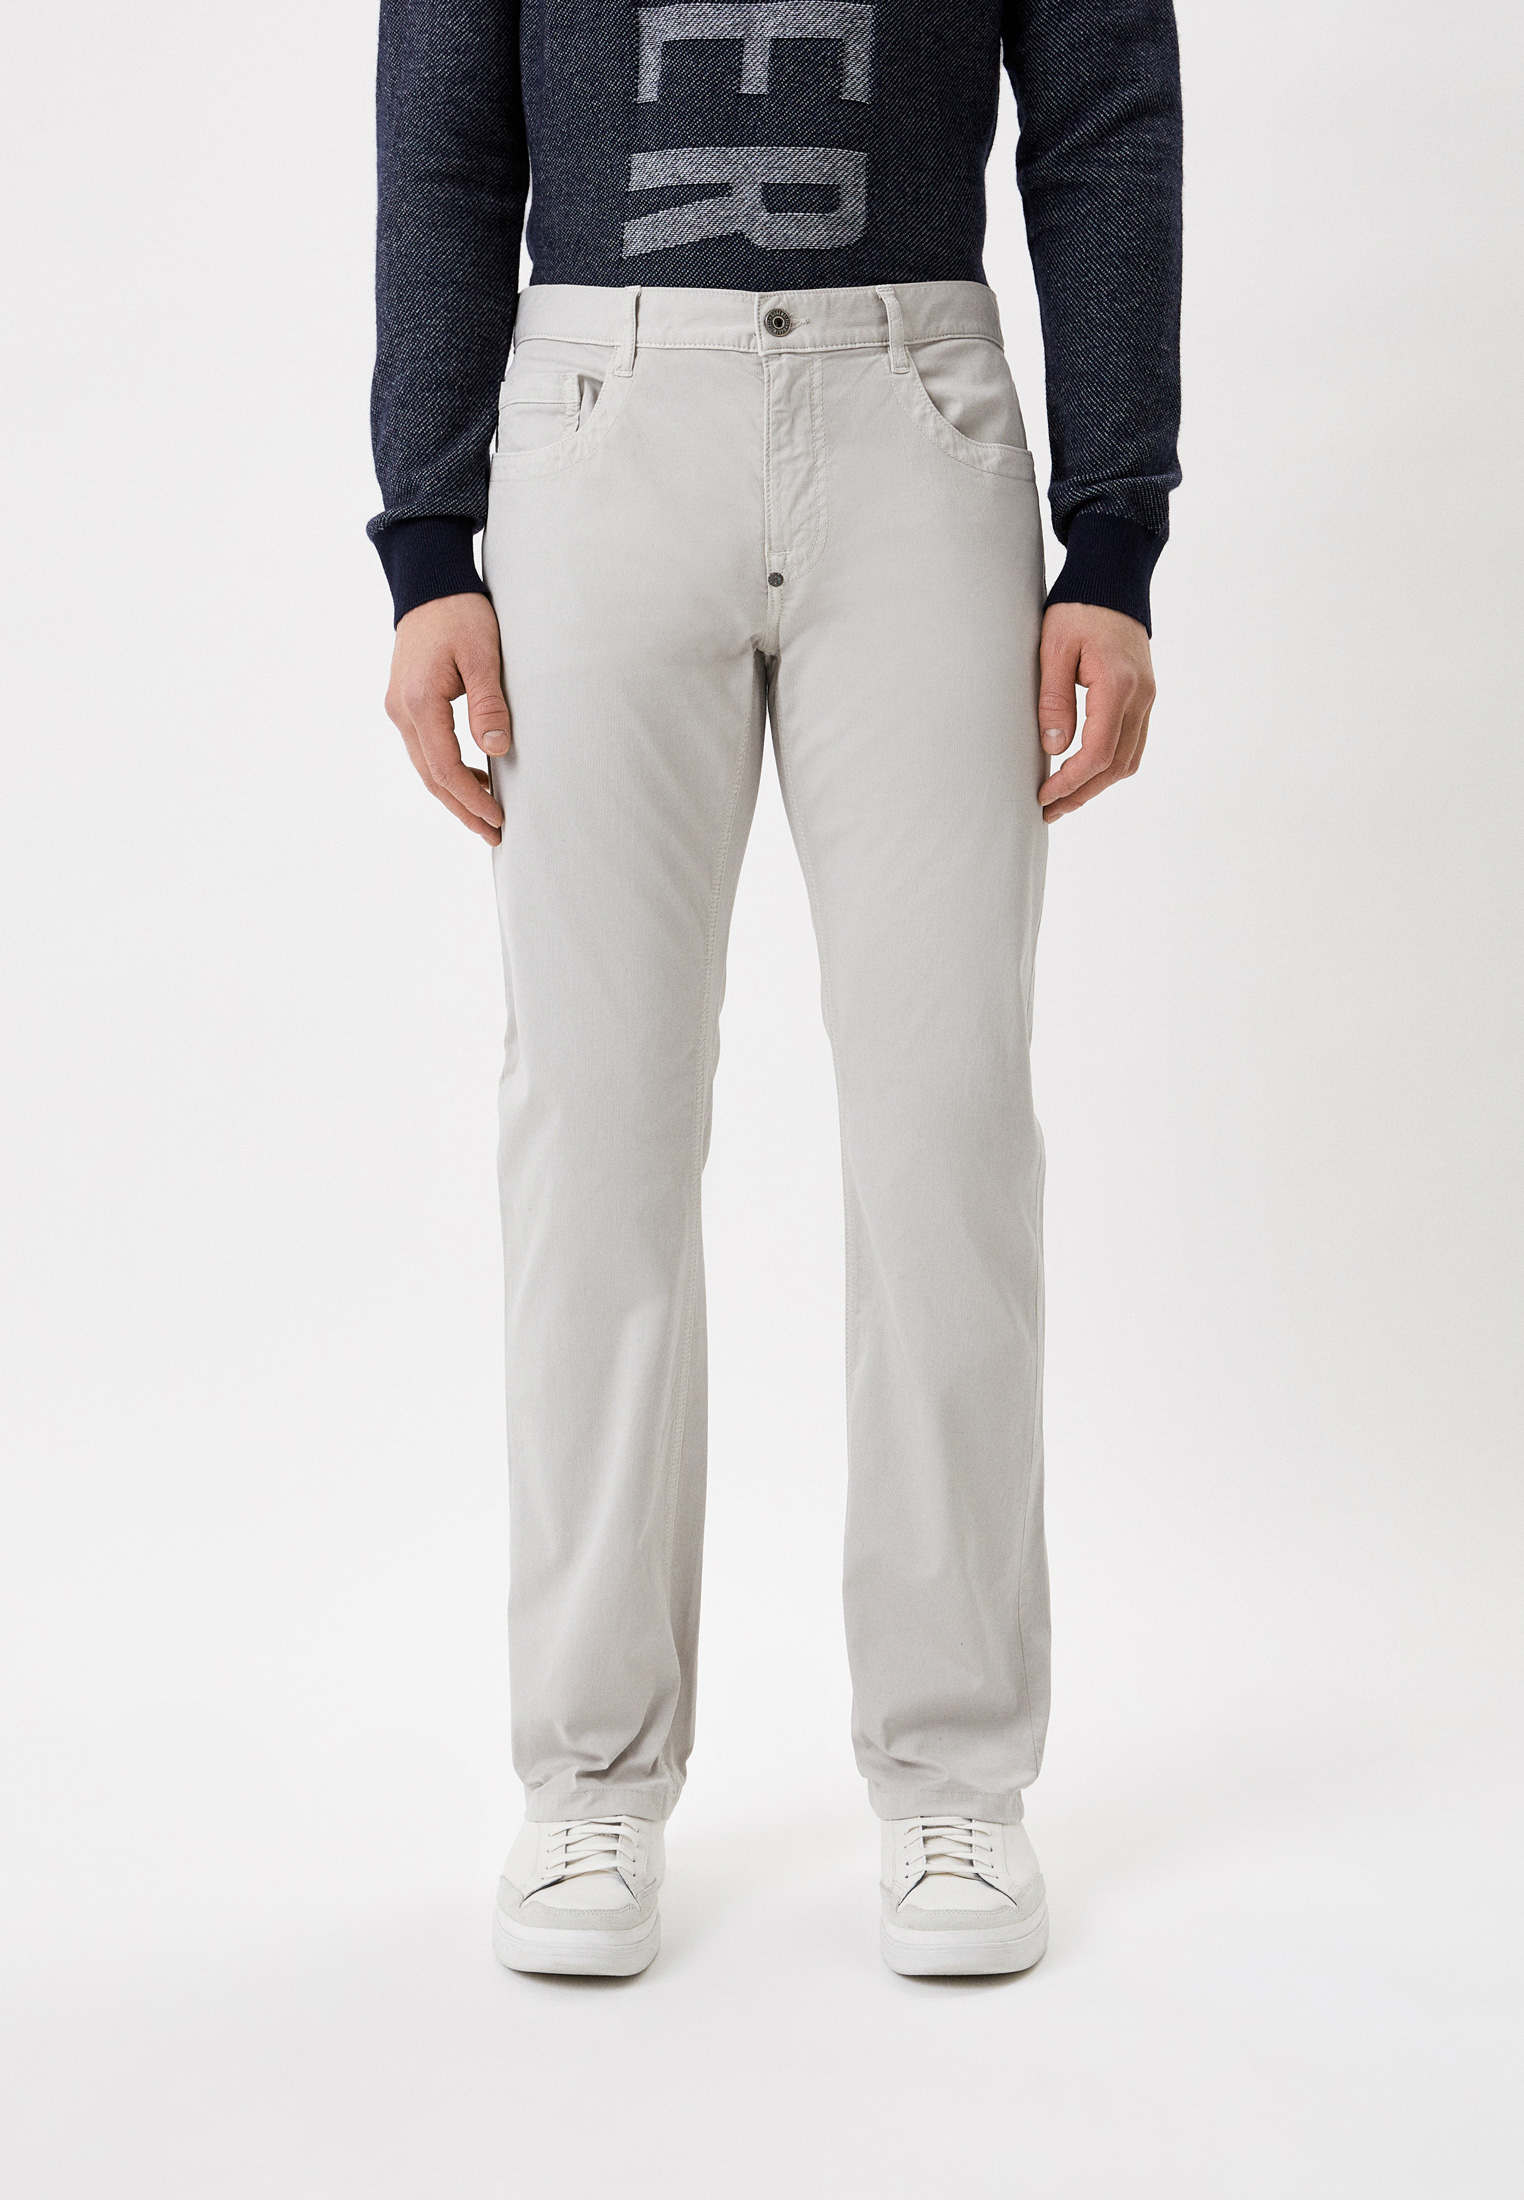 Мужские повседневные брюки Bikkembergs (Биккембергс) CQ11002S3514: изображение 1